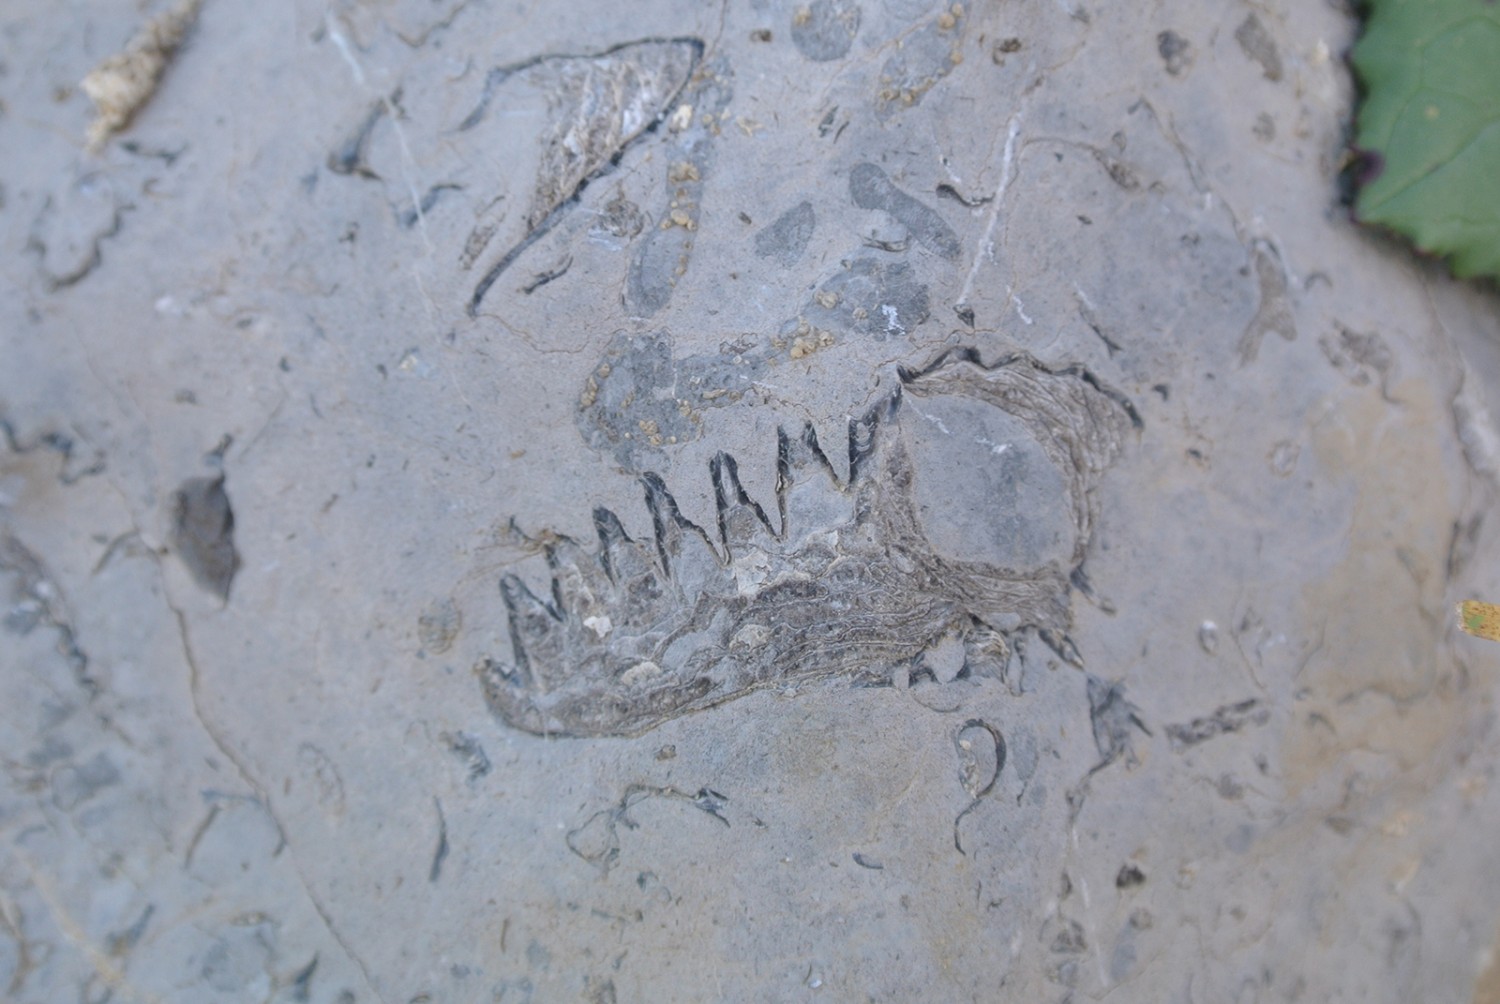 Un fossile aperçu chemin faisant.  Photo: Rémy Kappeler